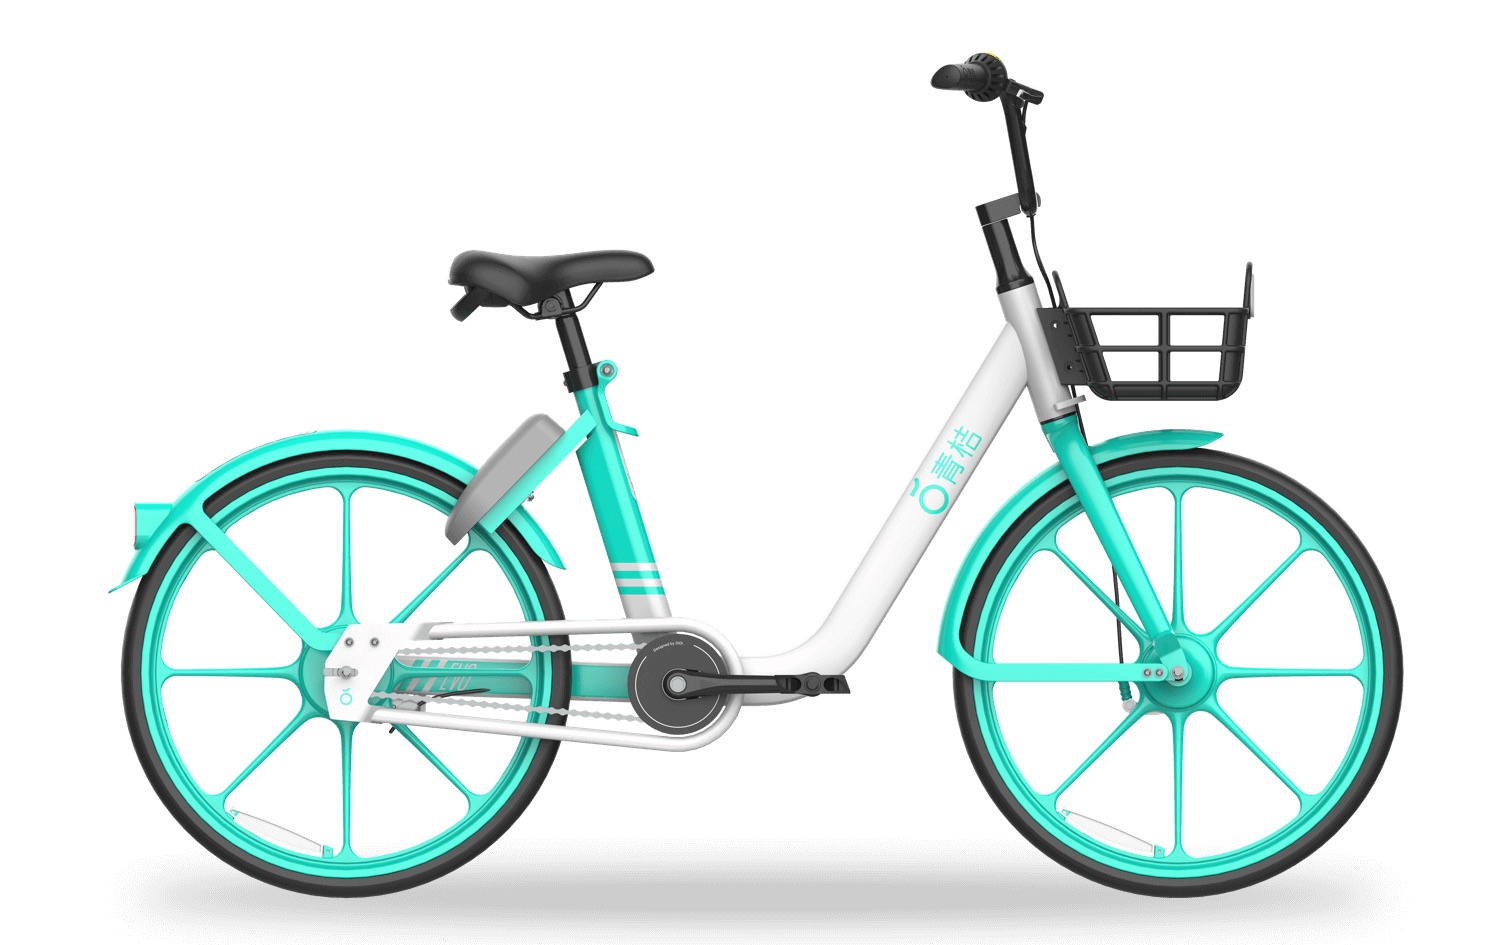 青桔共享单车logo图片